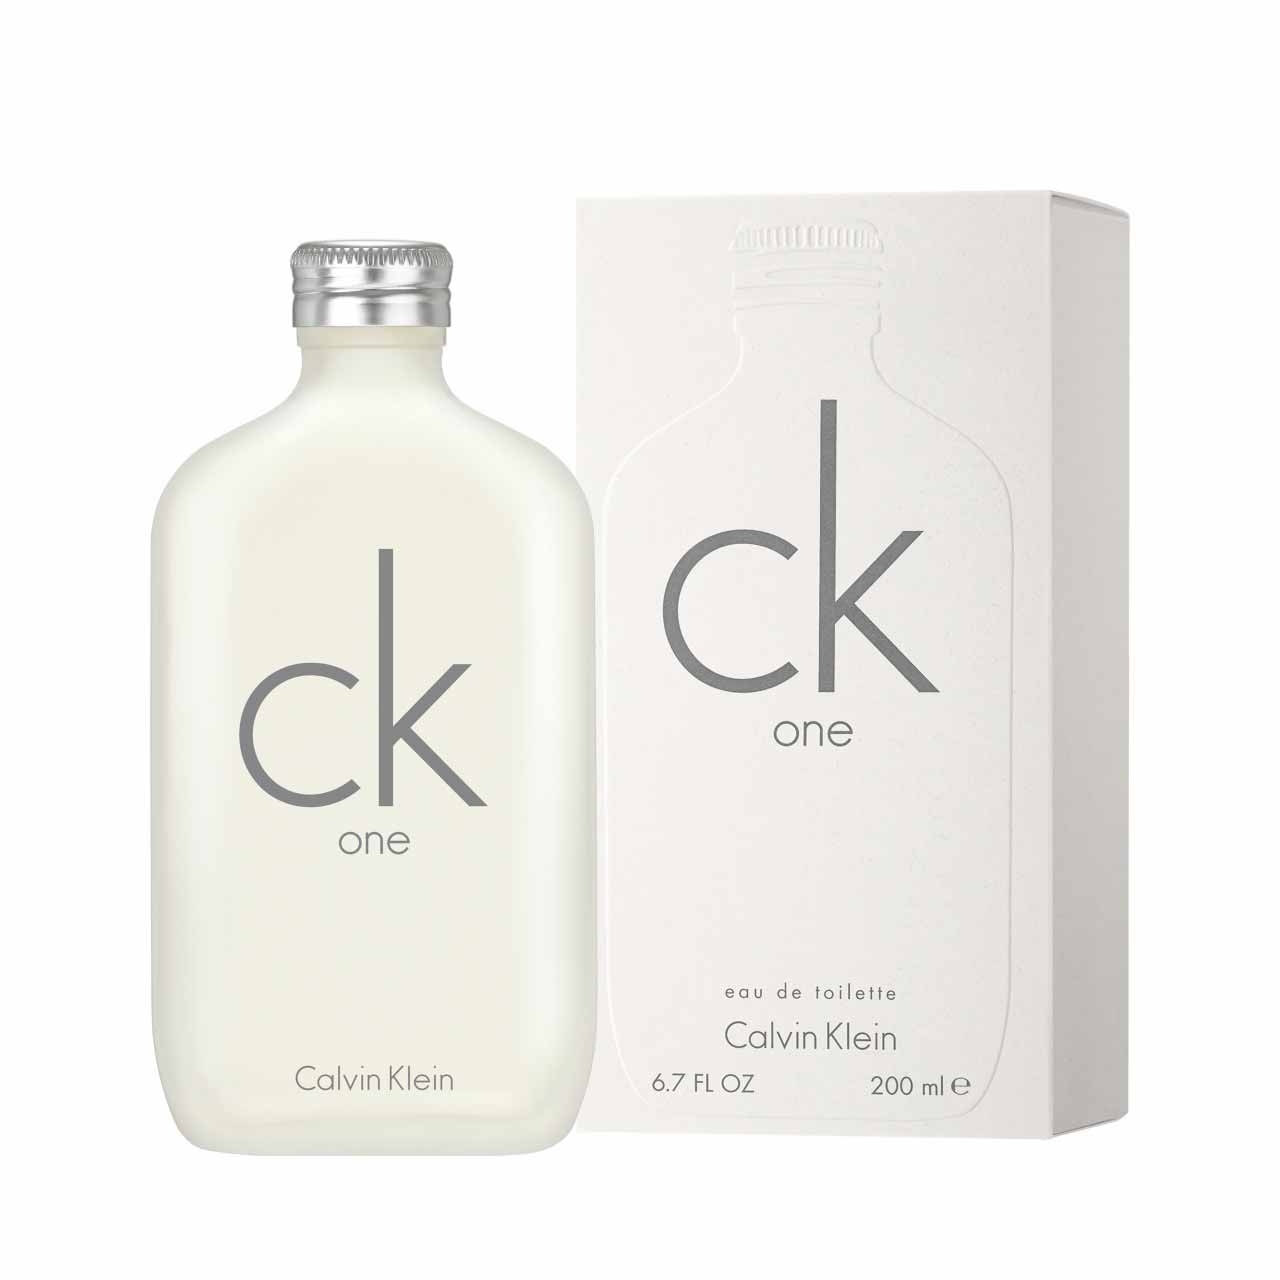 Calvin Klein CK One EDT 200ml Spray